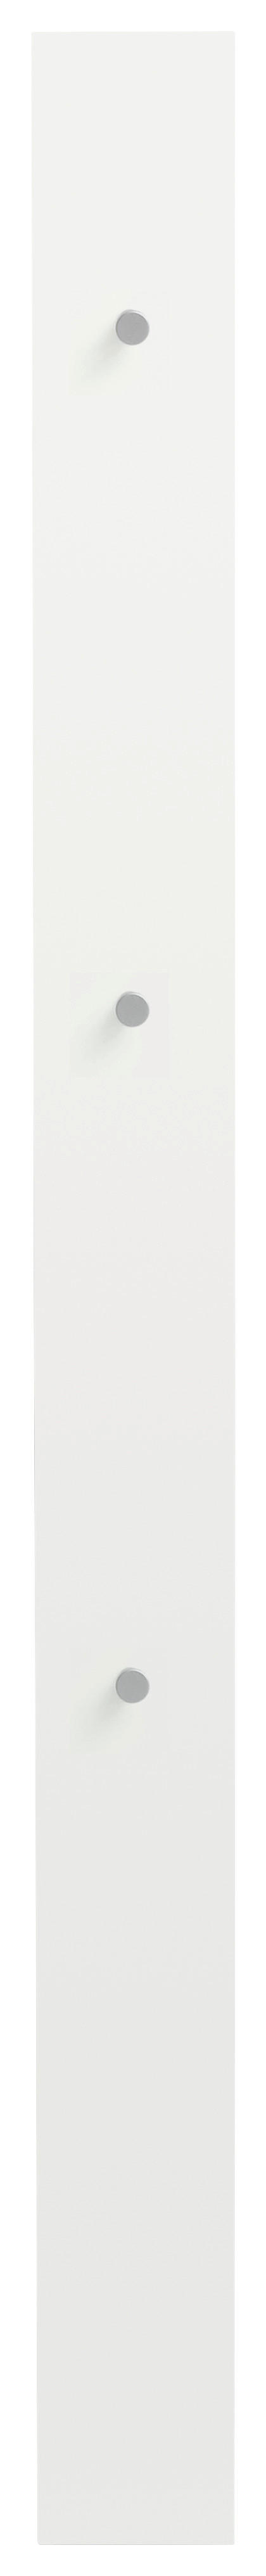 GARDEROBENPANEEL 14/170/5 cm  - Silberfarben/Weiß, Design (14/170/5cm) - Dieter Knoll